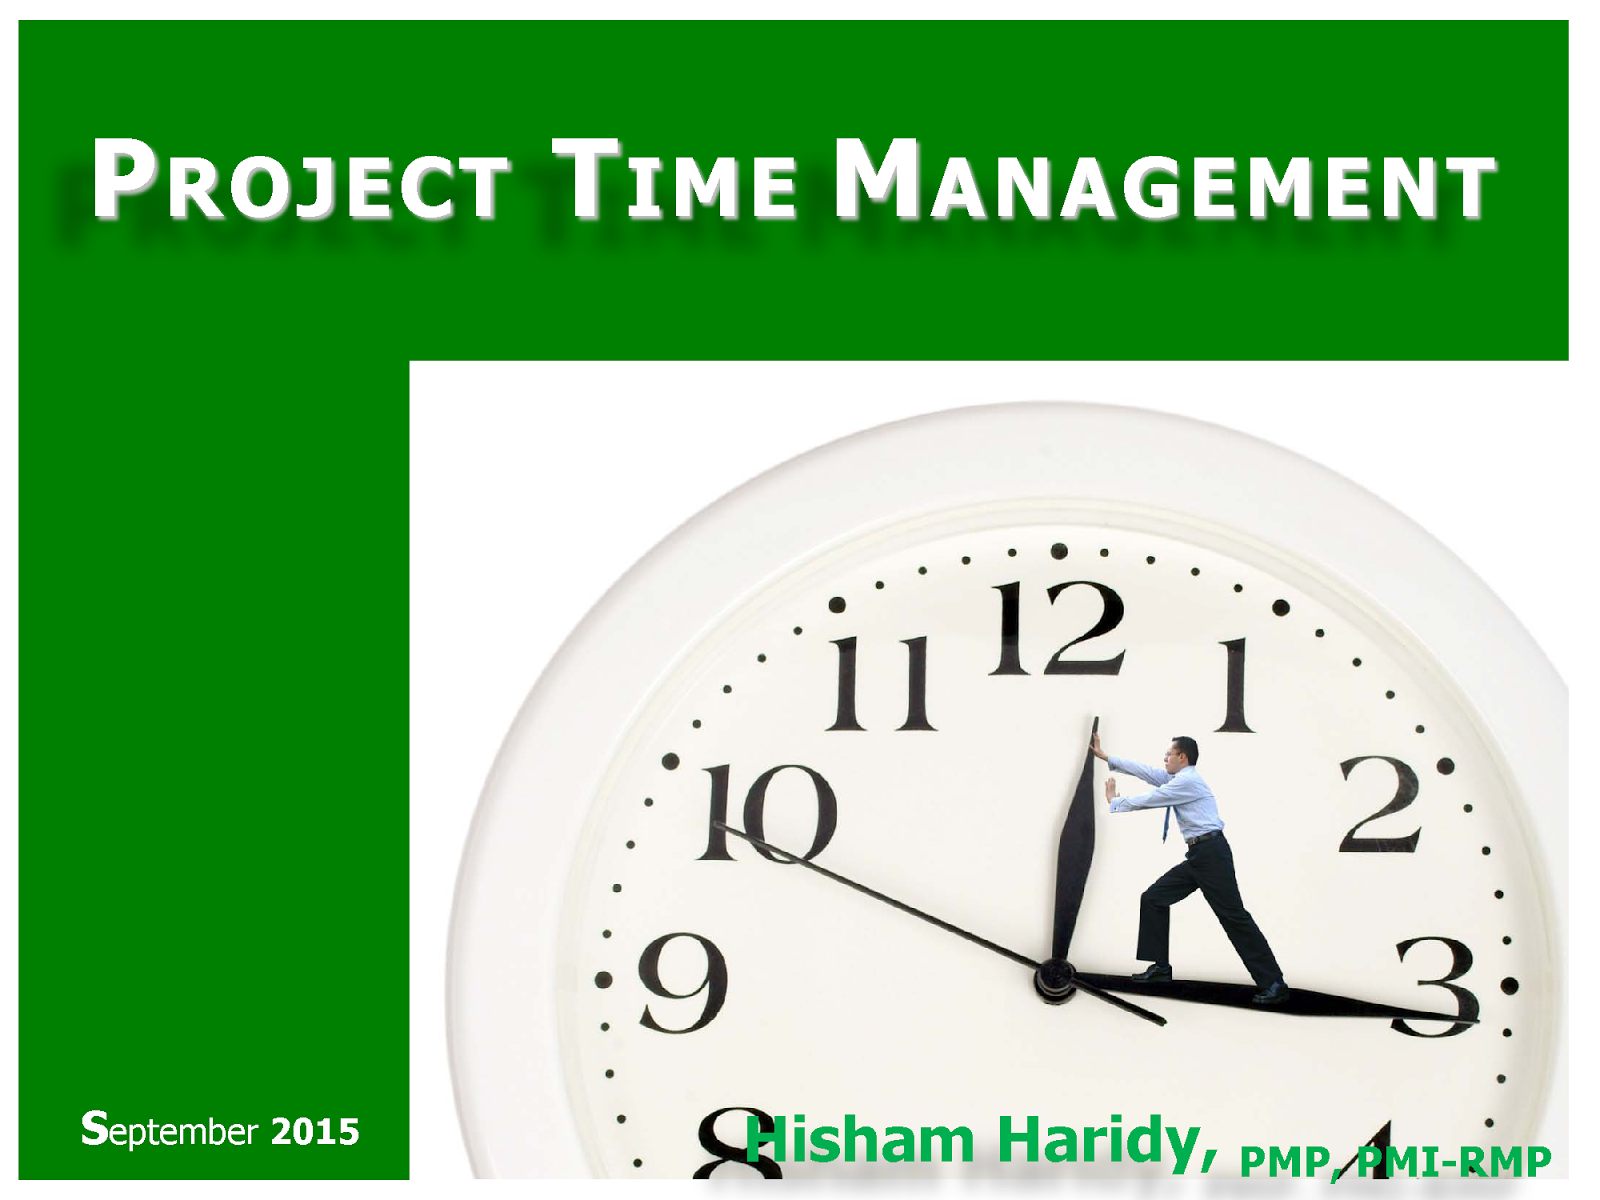 Проект время 30. Тайм-менеджмент. Управление временем проекта (Project time Management). Тайминг картинка. План действий картинка.